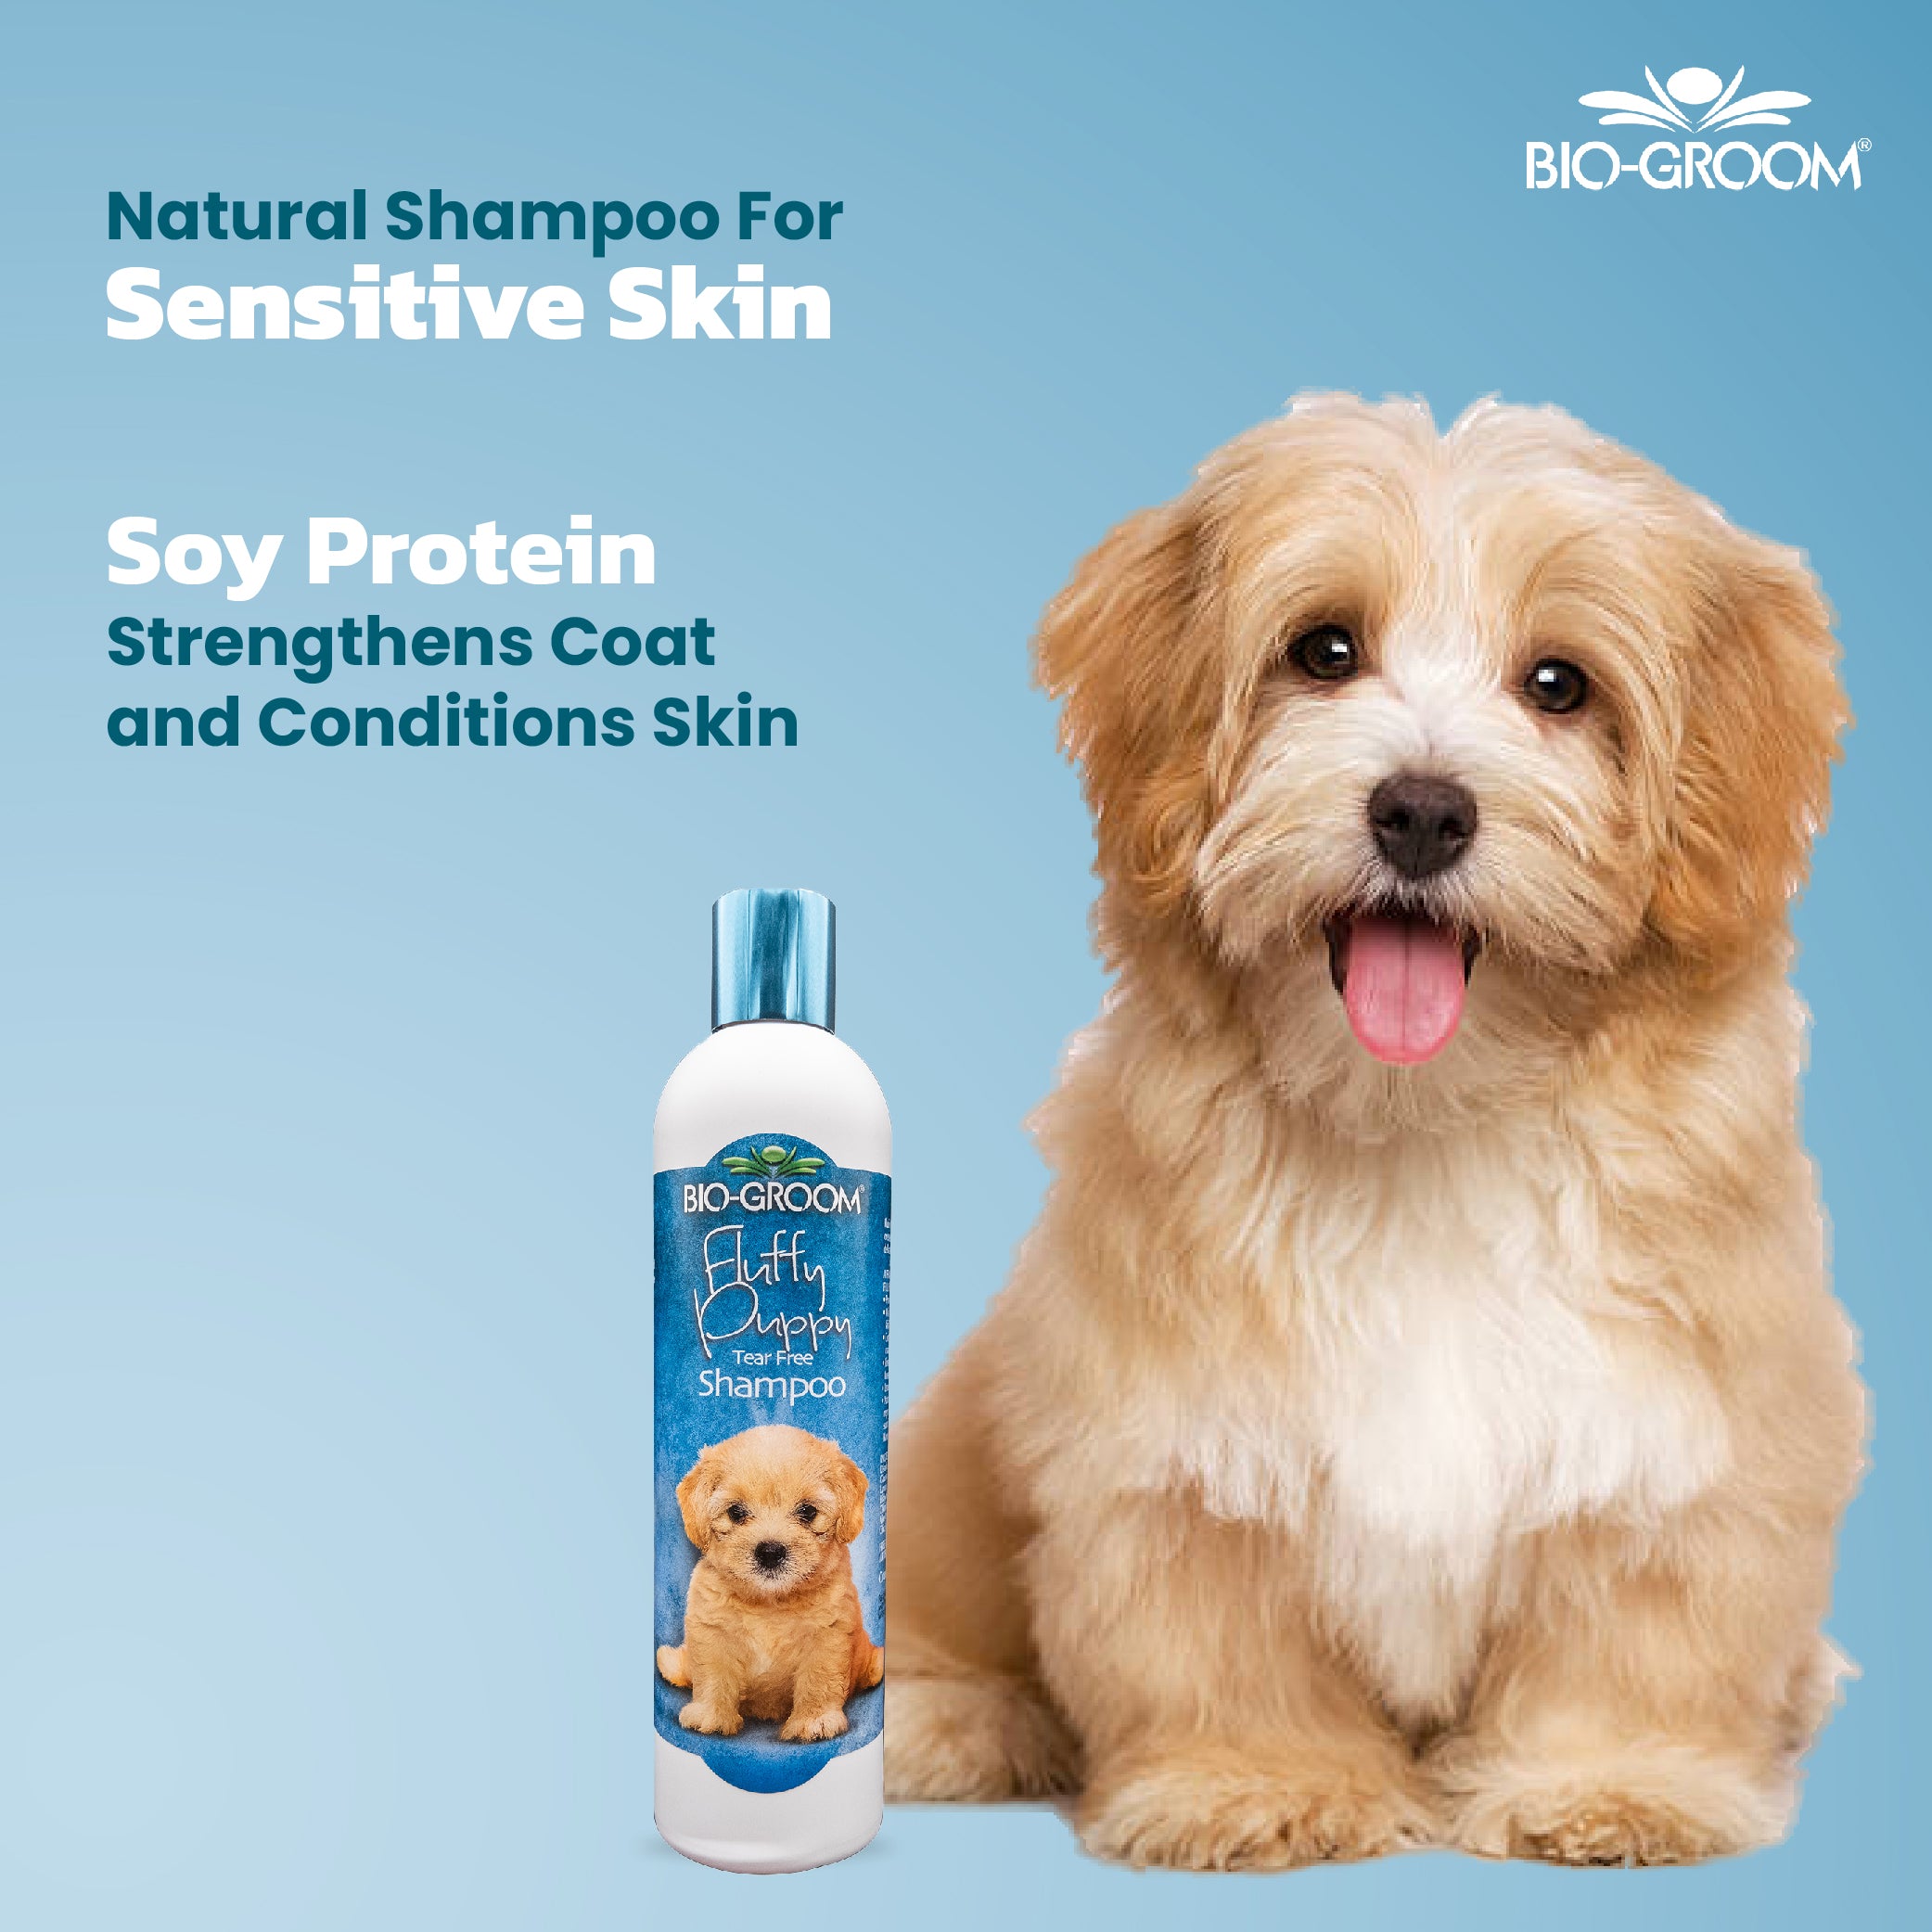 Bio-groom Fluffy Puppy Tear Free Shampoo, 355ml